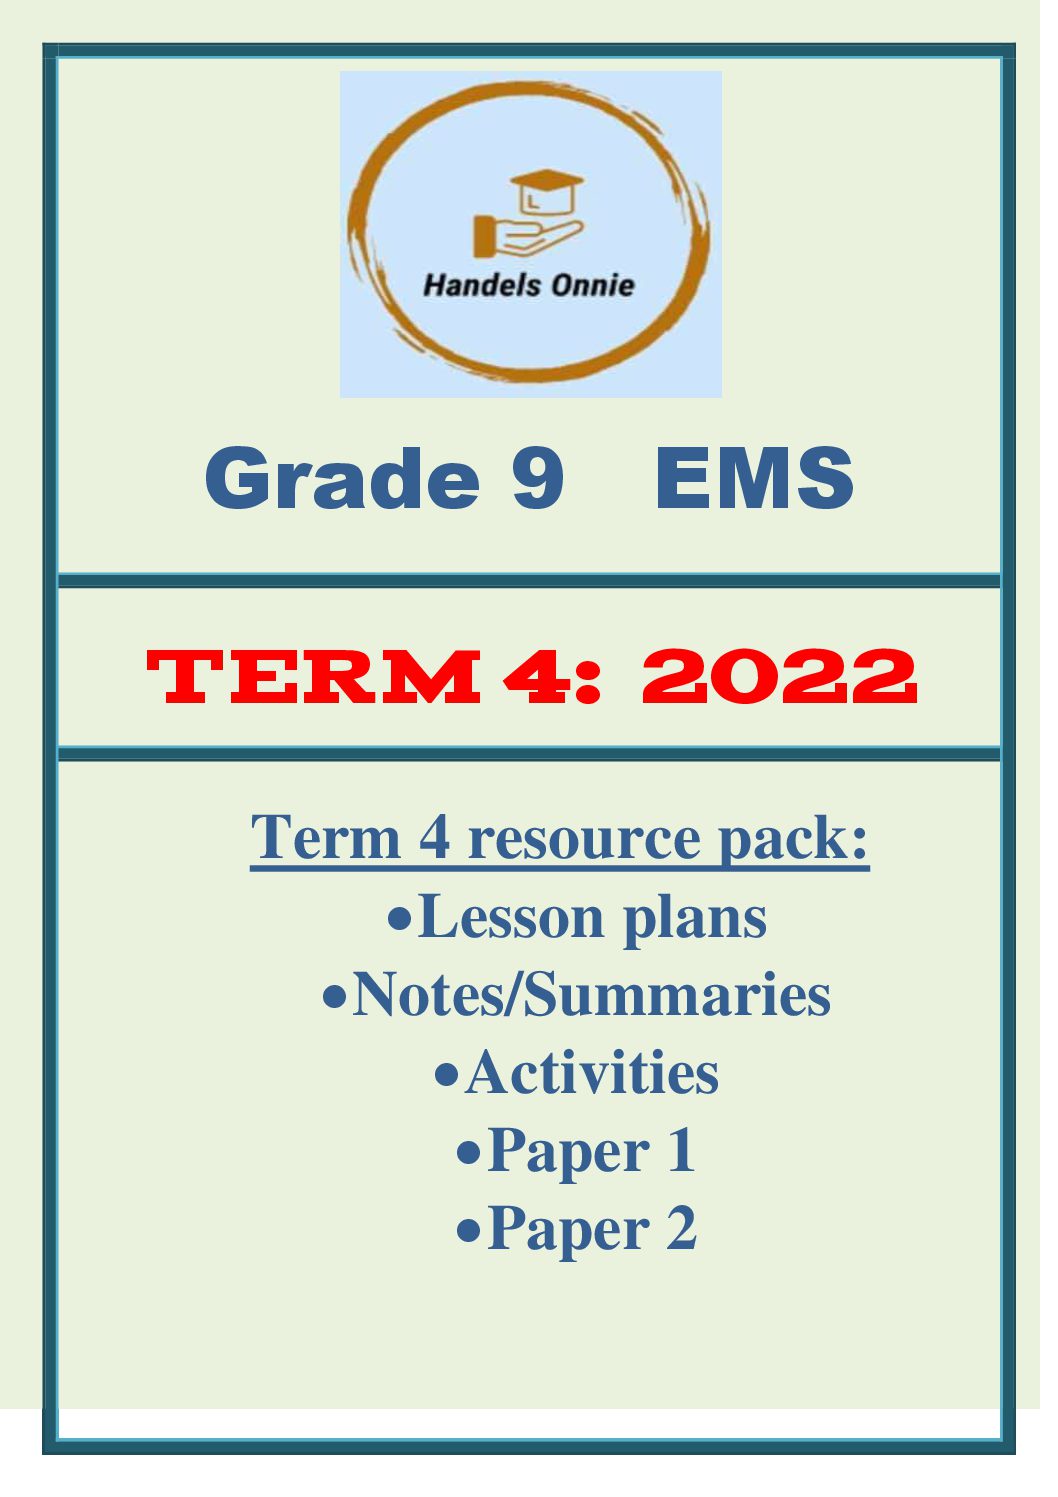 ems grade 9 assignment term 1 pdf